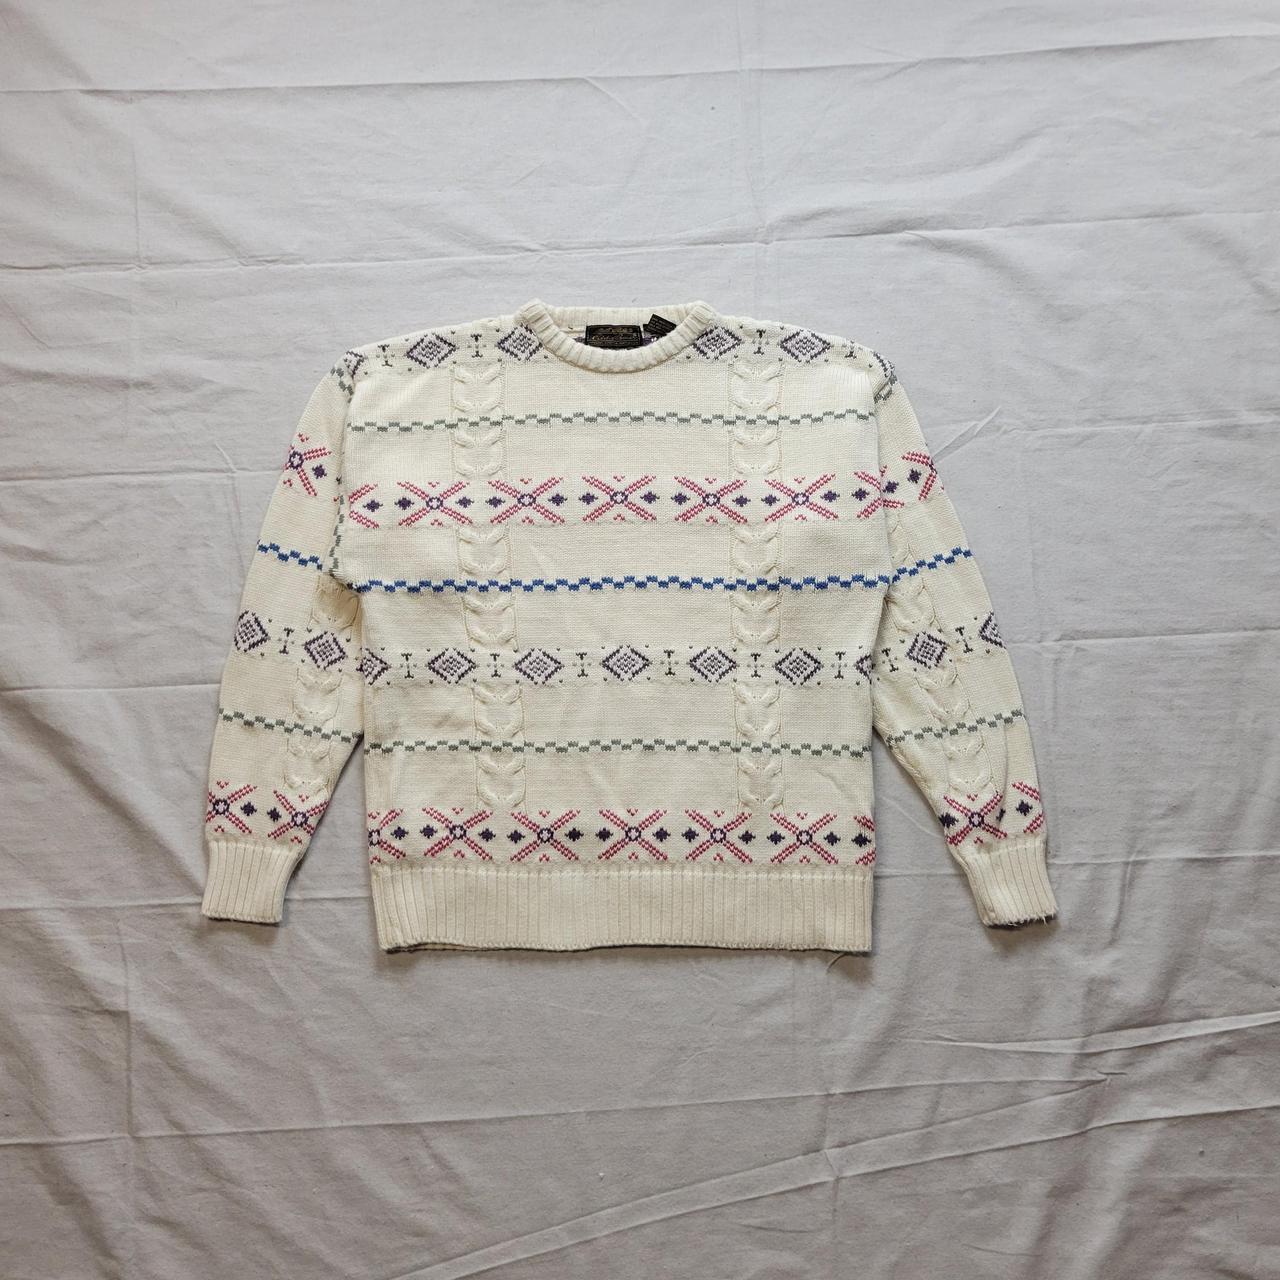 Vintage knit sweater Eddie Bauer cream Amazing 80s... - Depop